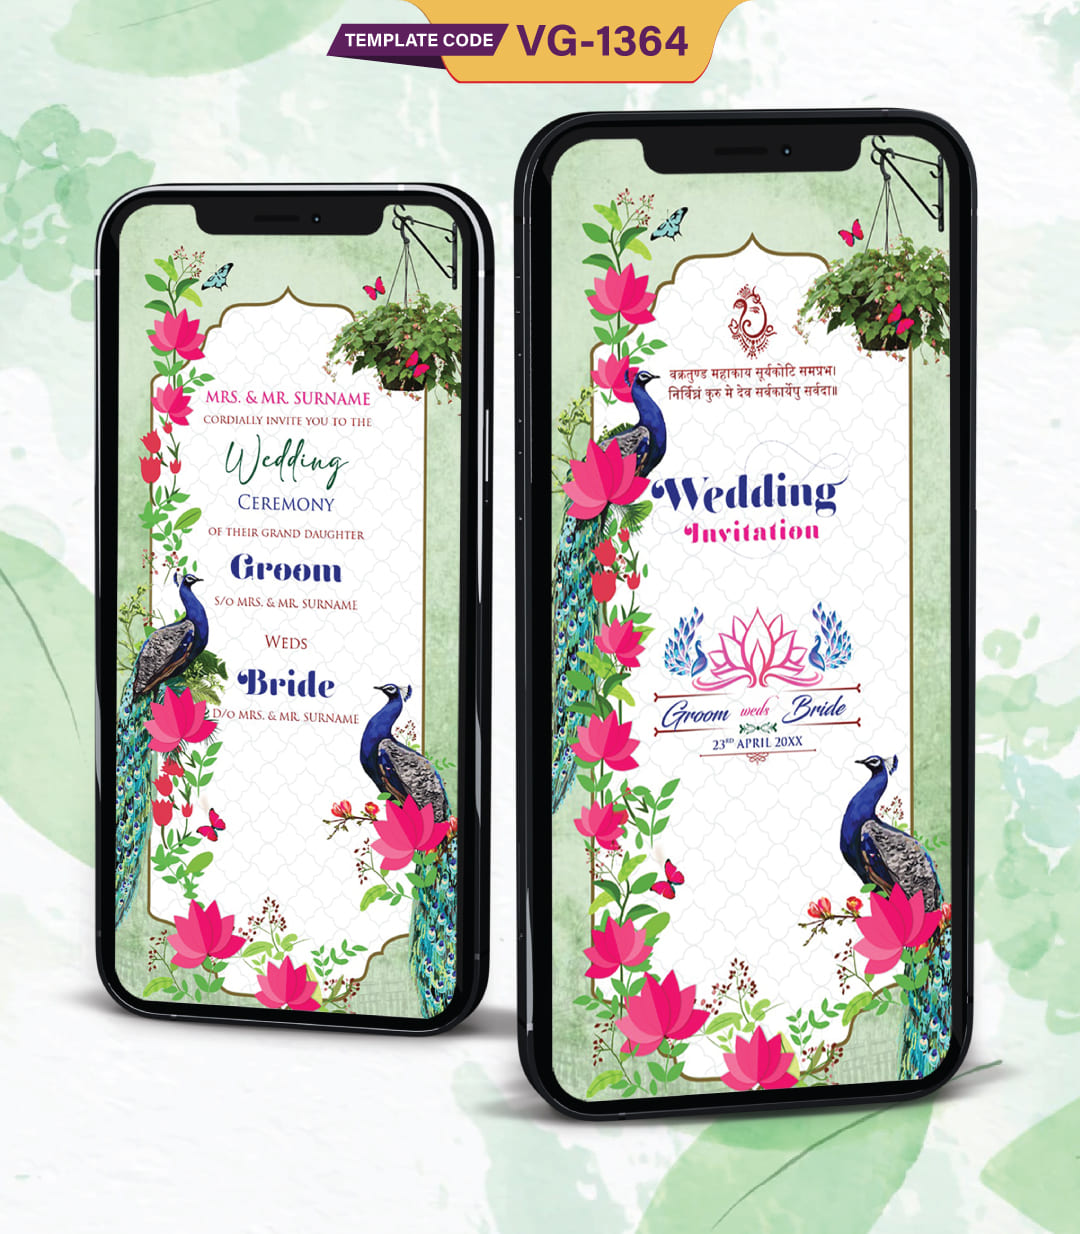 Peacock Theme Wedding Card Design